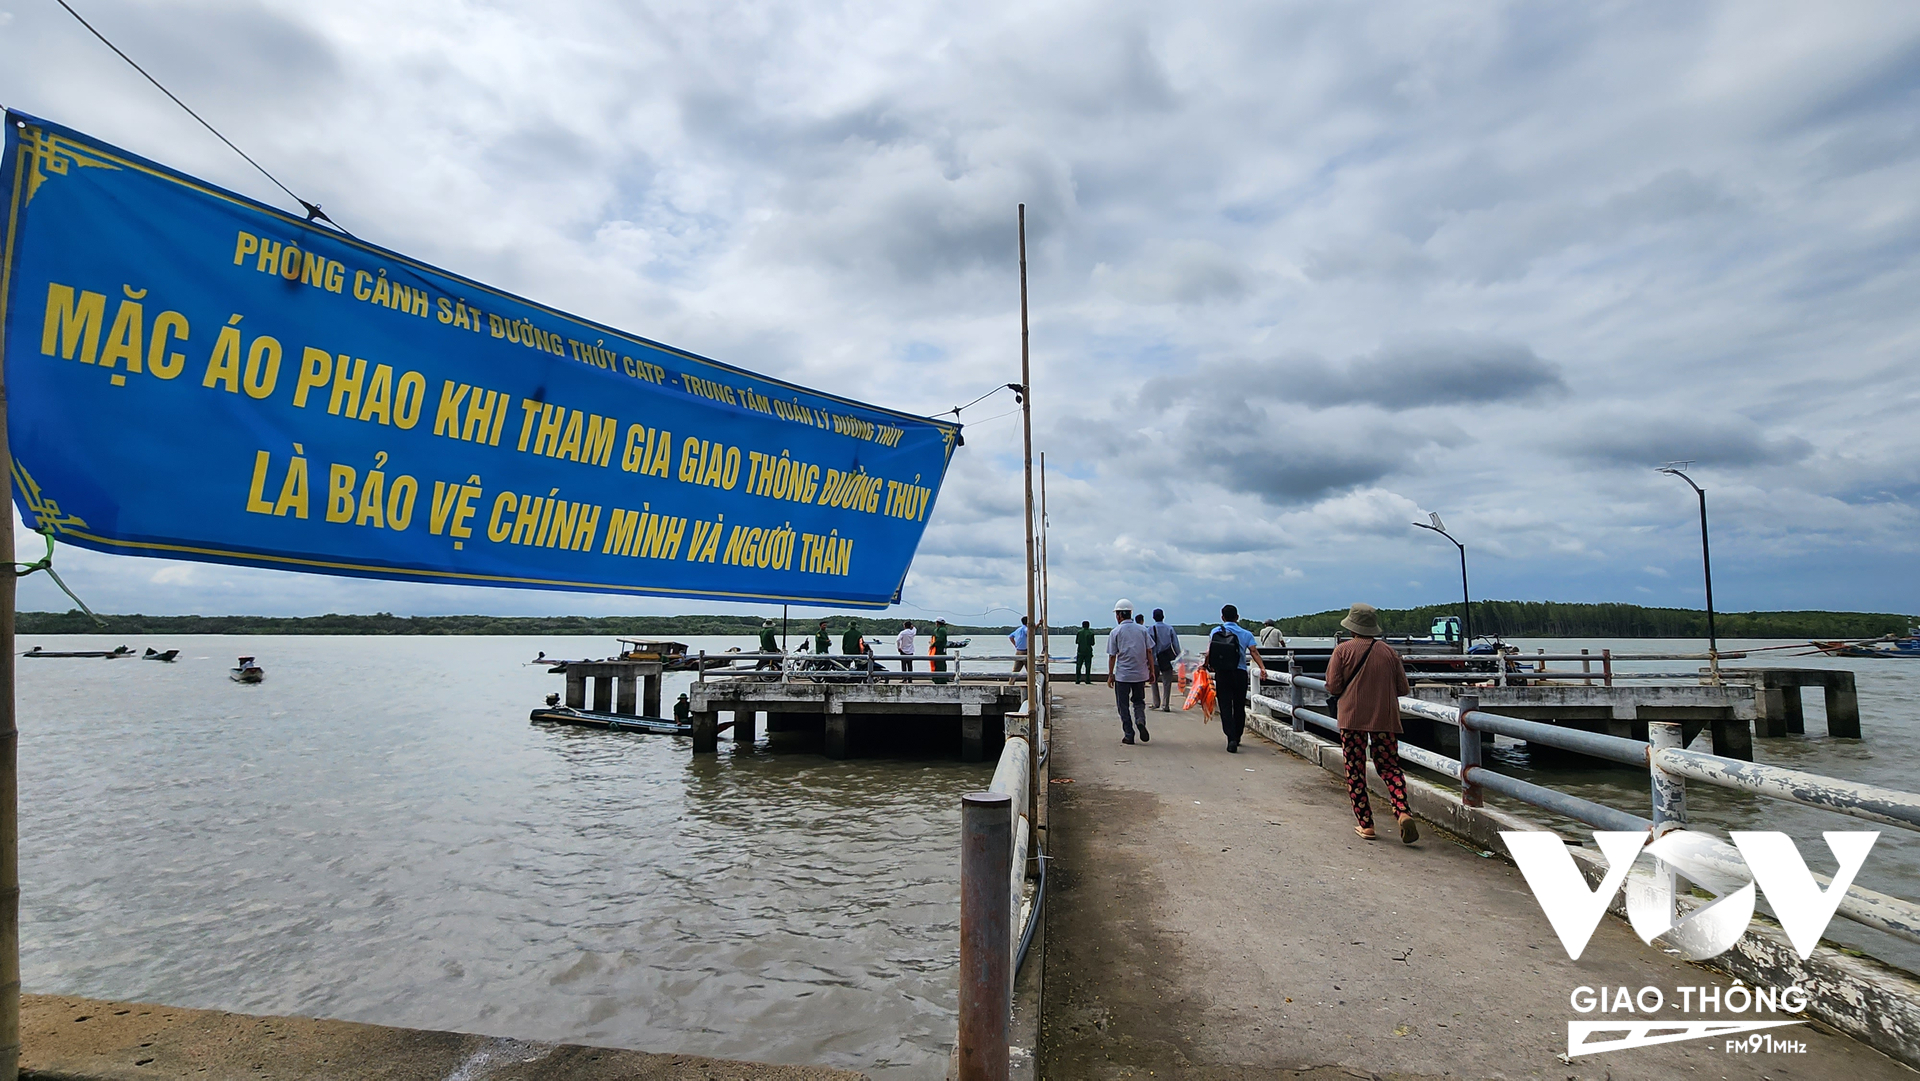 Lực lượng chức năng đã thực hiện tuyên truyền đến người dân là chủ phương tiện, chủ bến khách ven sông tại huyện Cần Giờ,TP,HCM về luật giao thông đường thủy